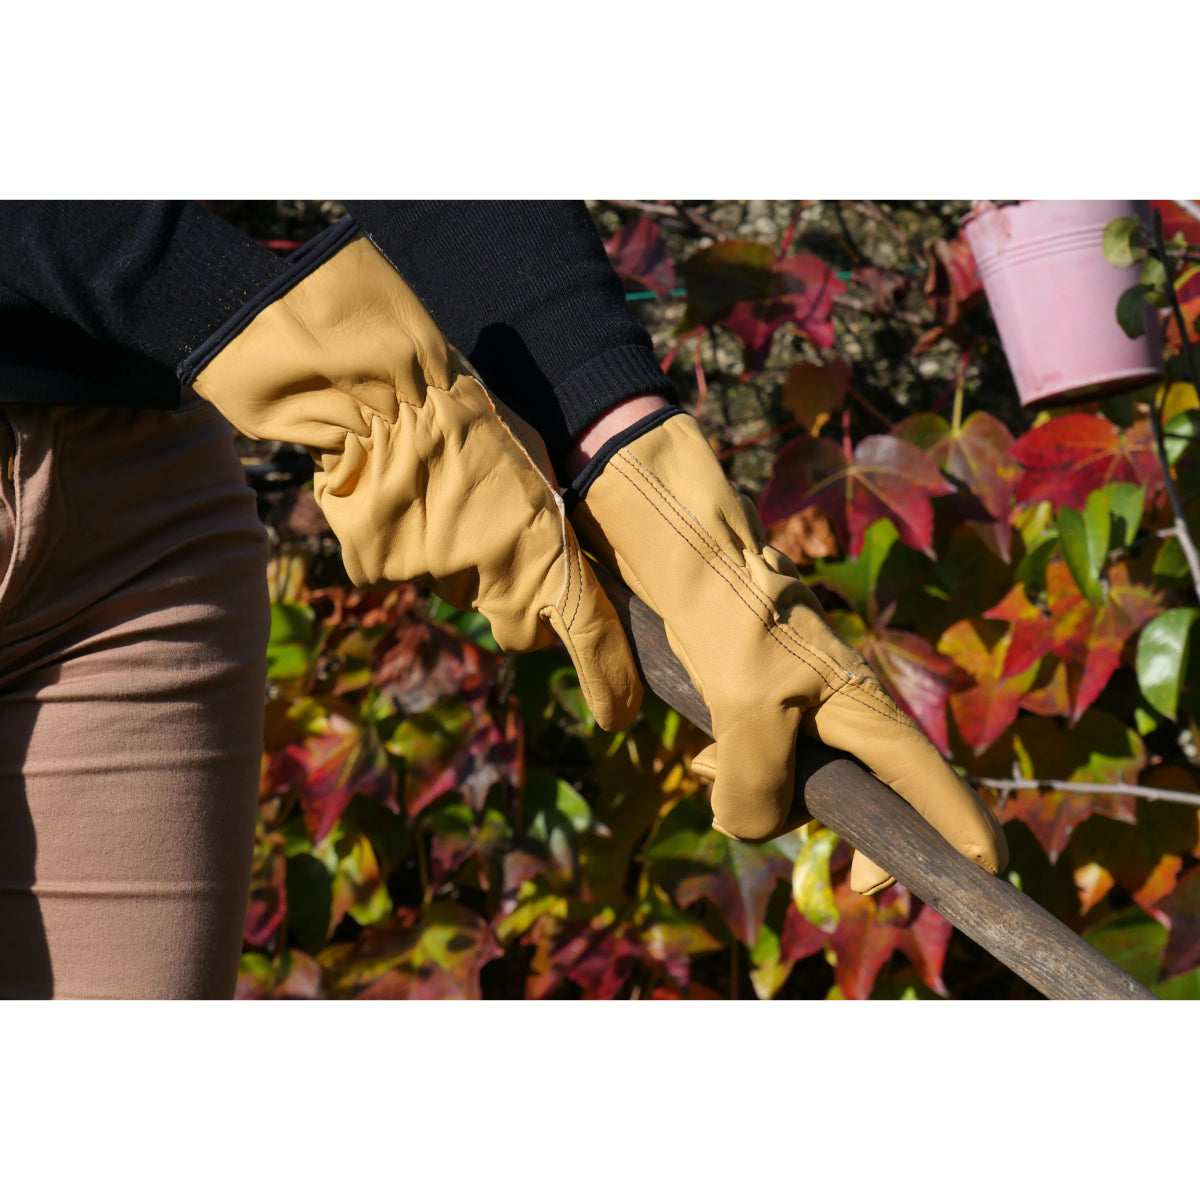 Gants de jardinage, gants d'élagage en cuir de chèvre rose - durabilité  respirante, avec gant épineux,XL